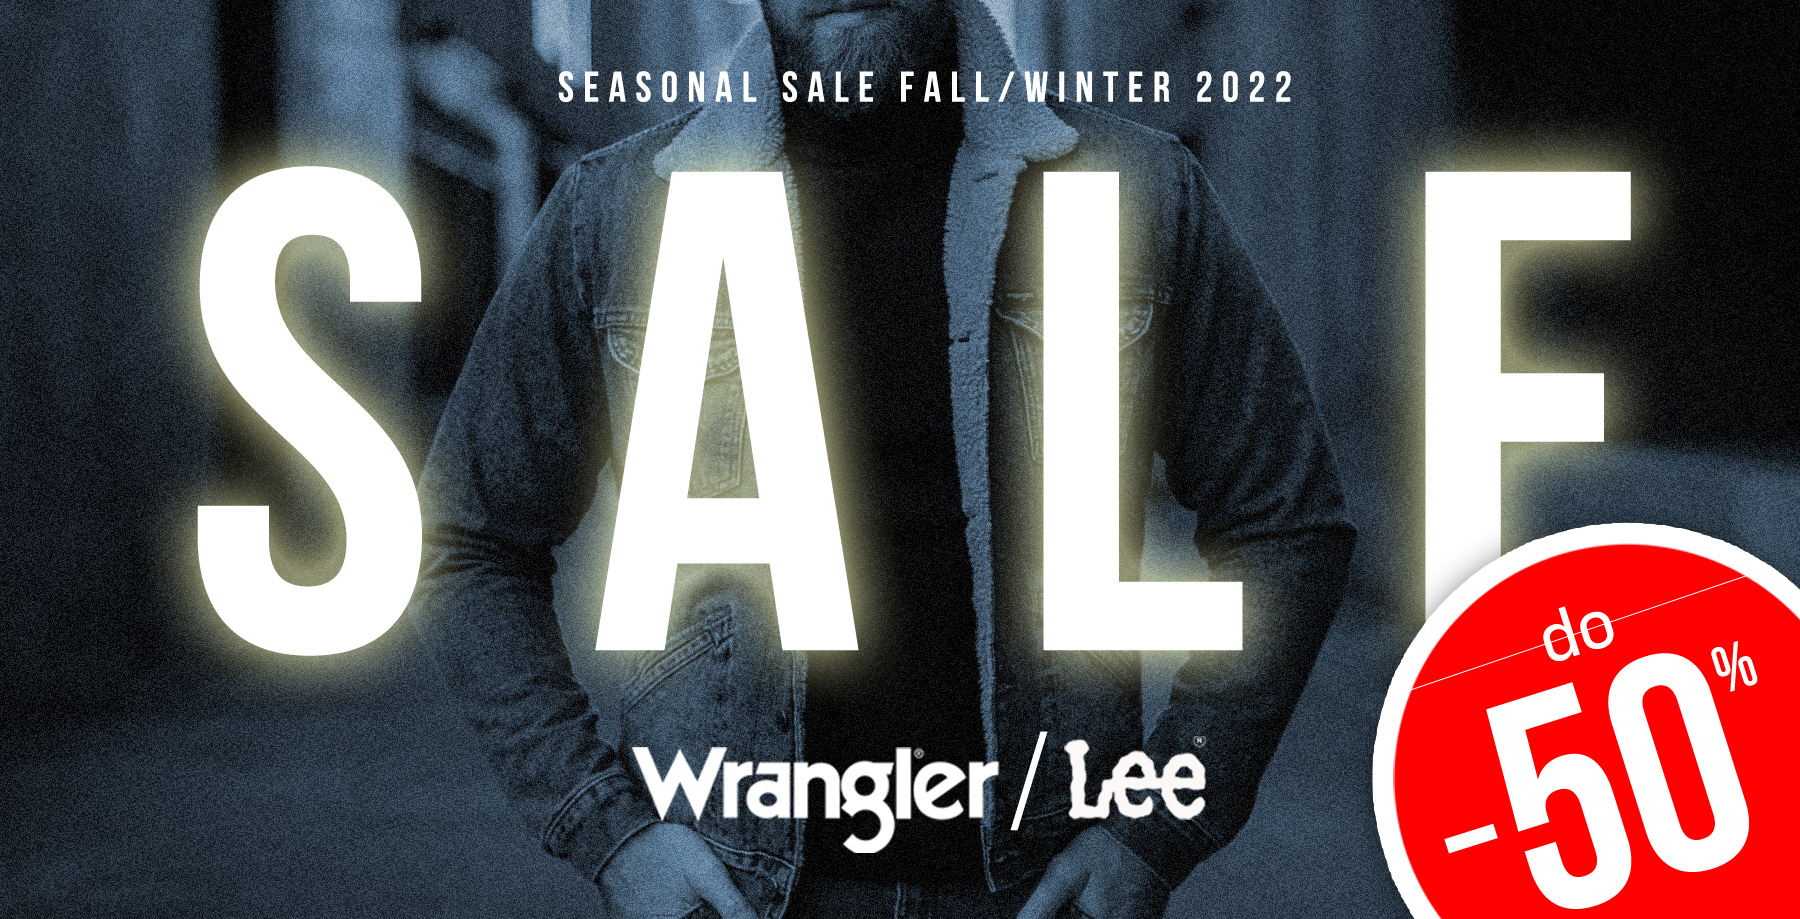 Wrangler/Lee zimowa wyprzedaż 2022